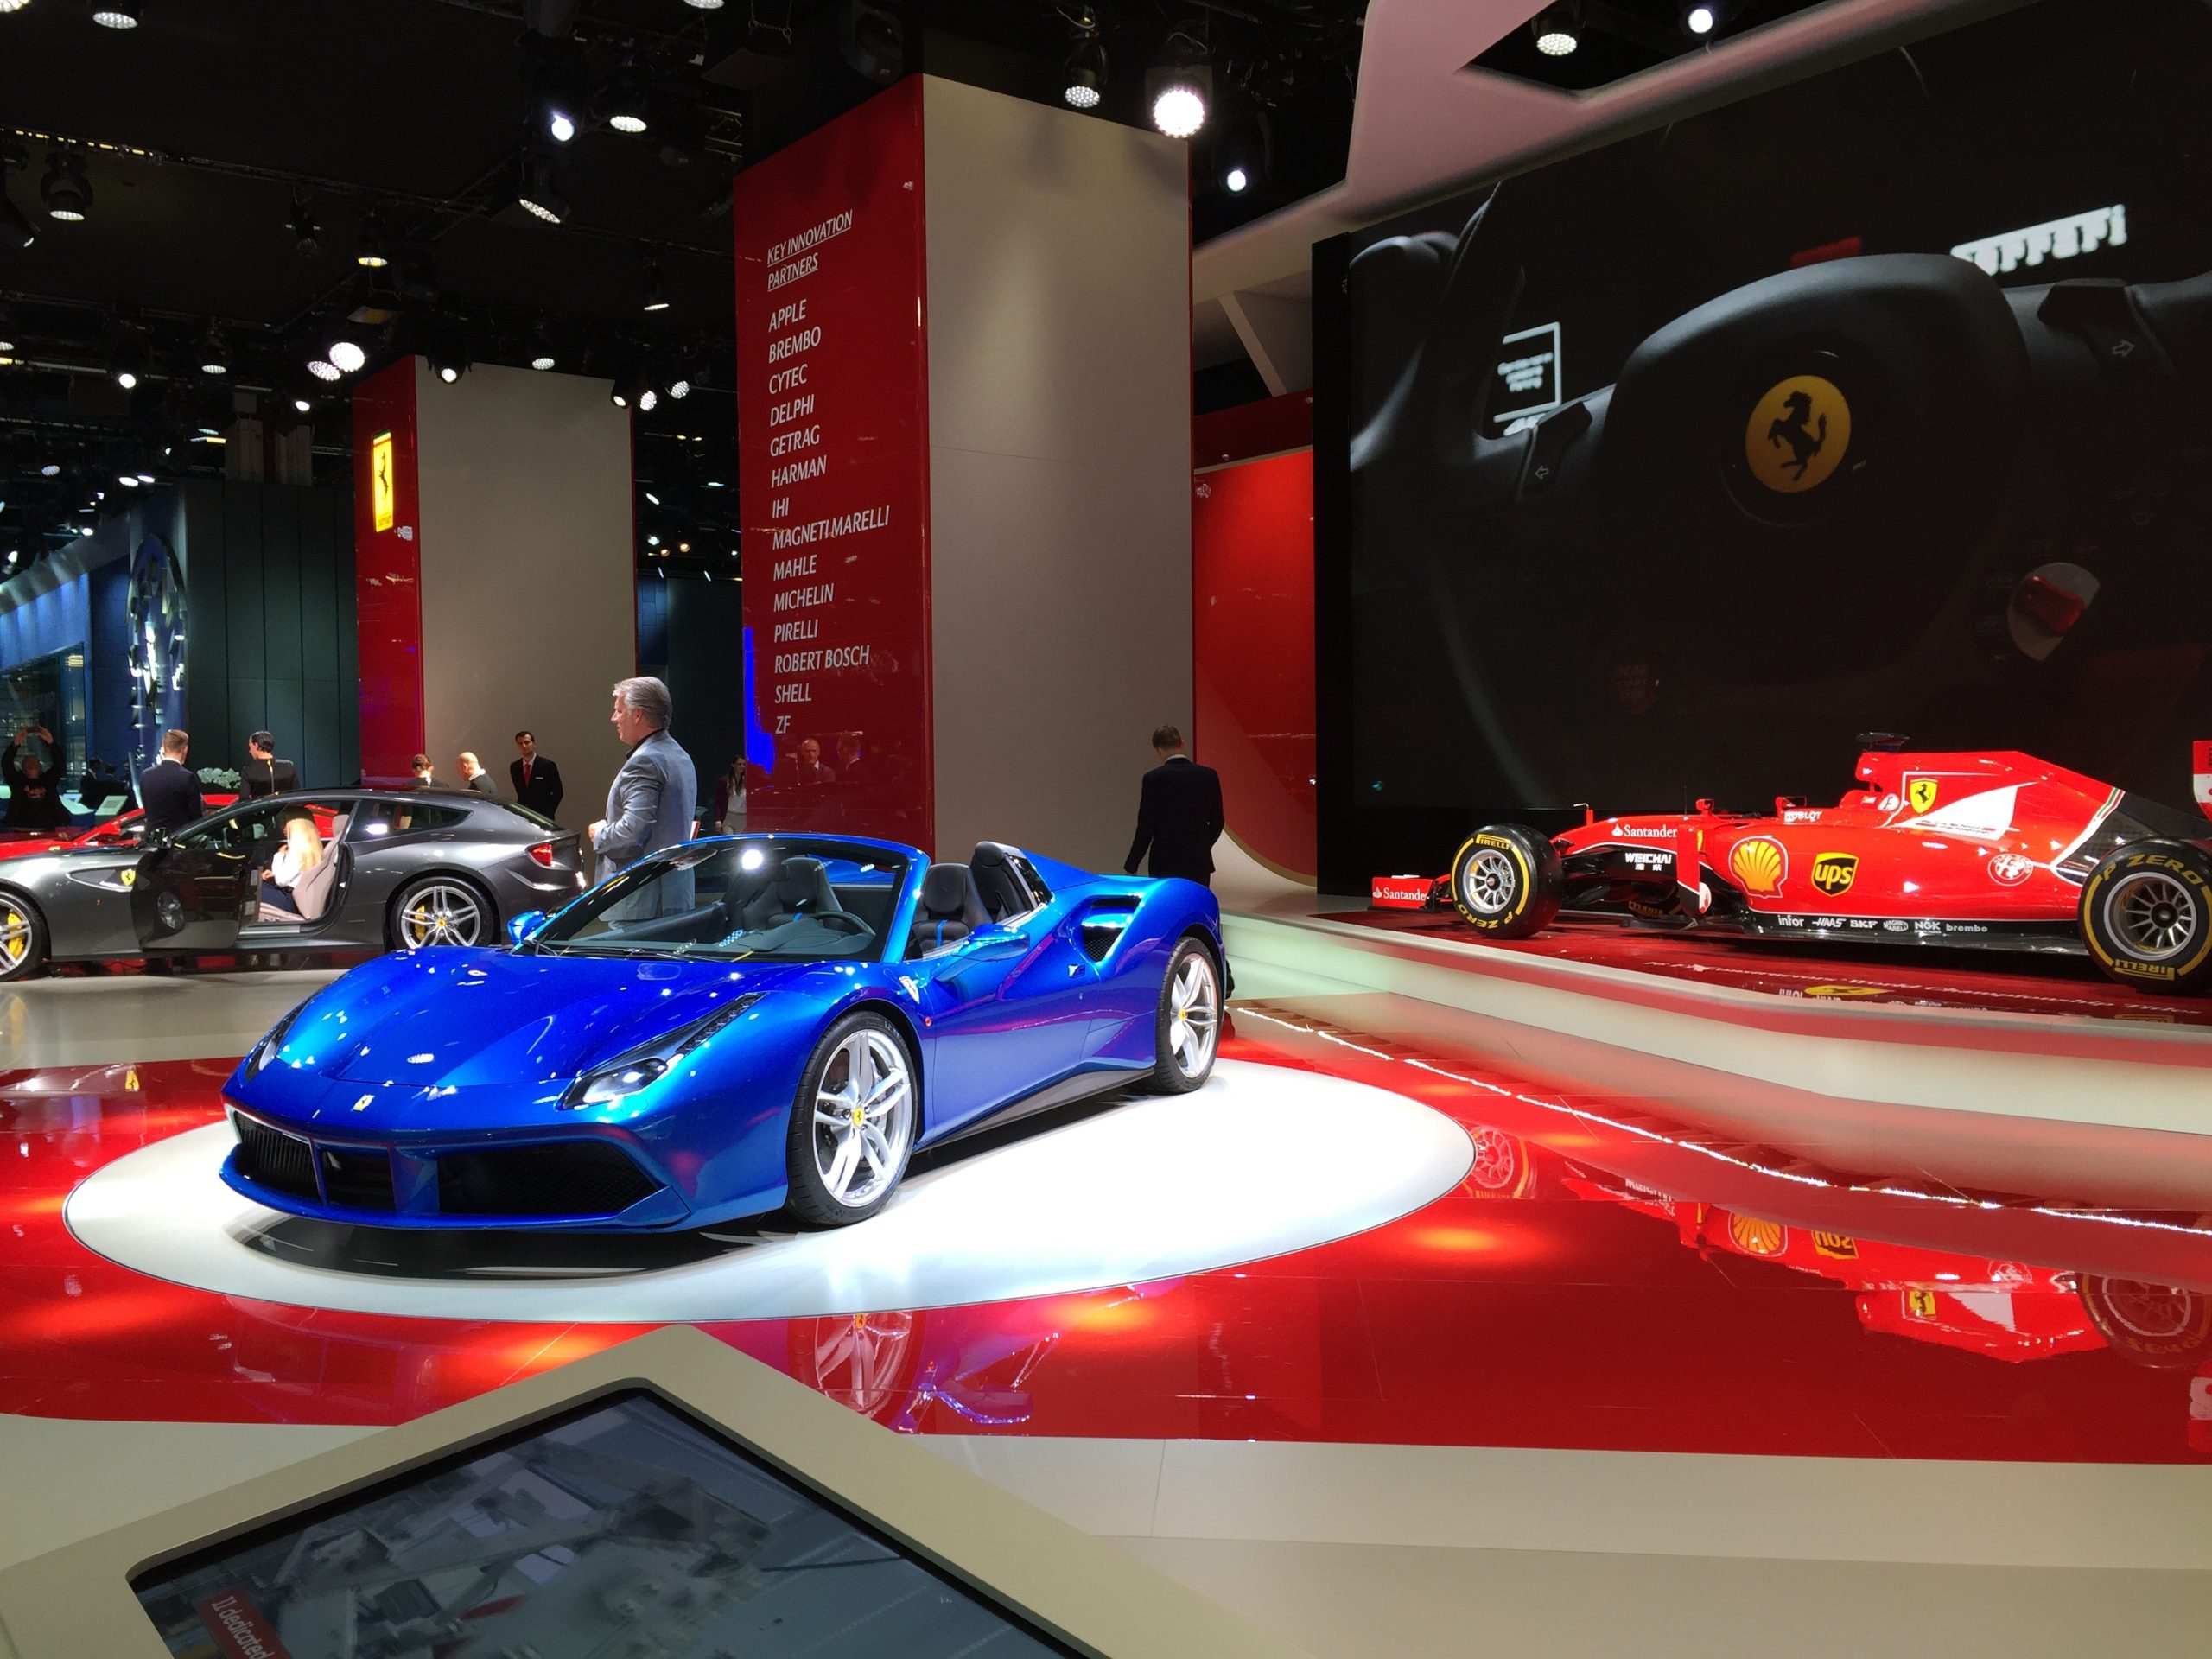 Tour um Dia – Tour Museu da Ferrari